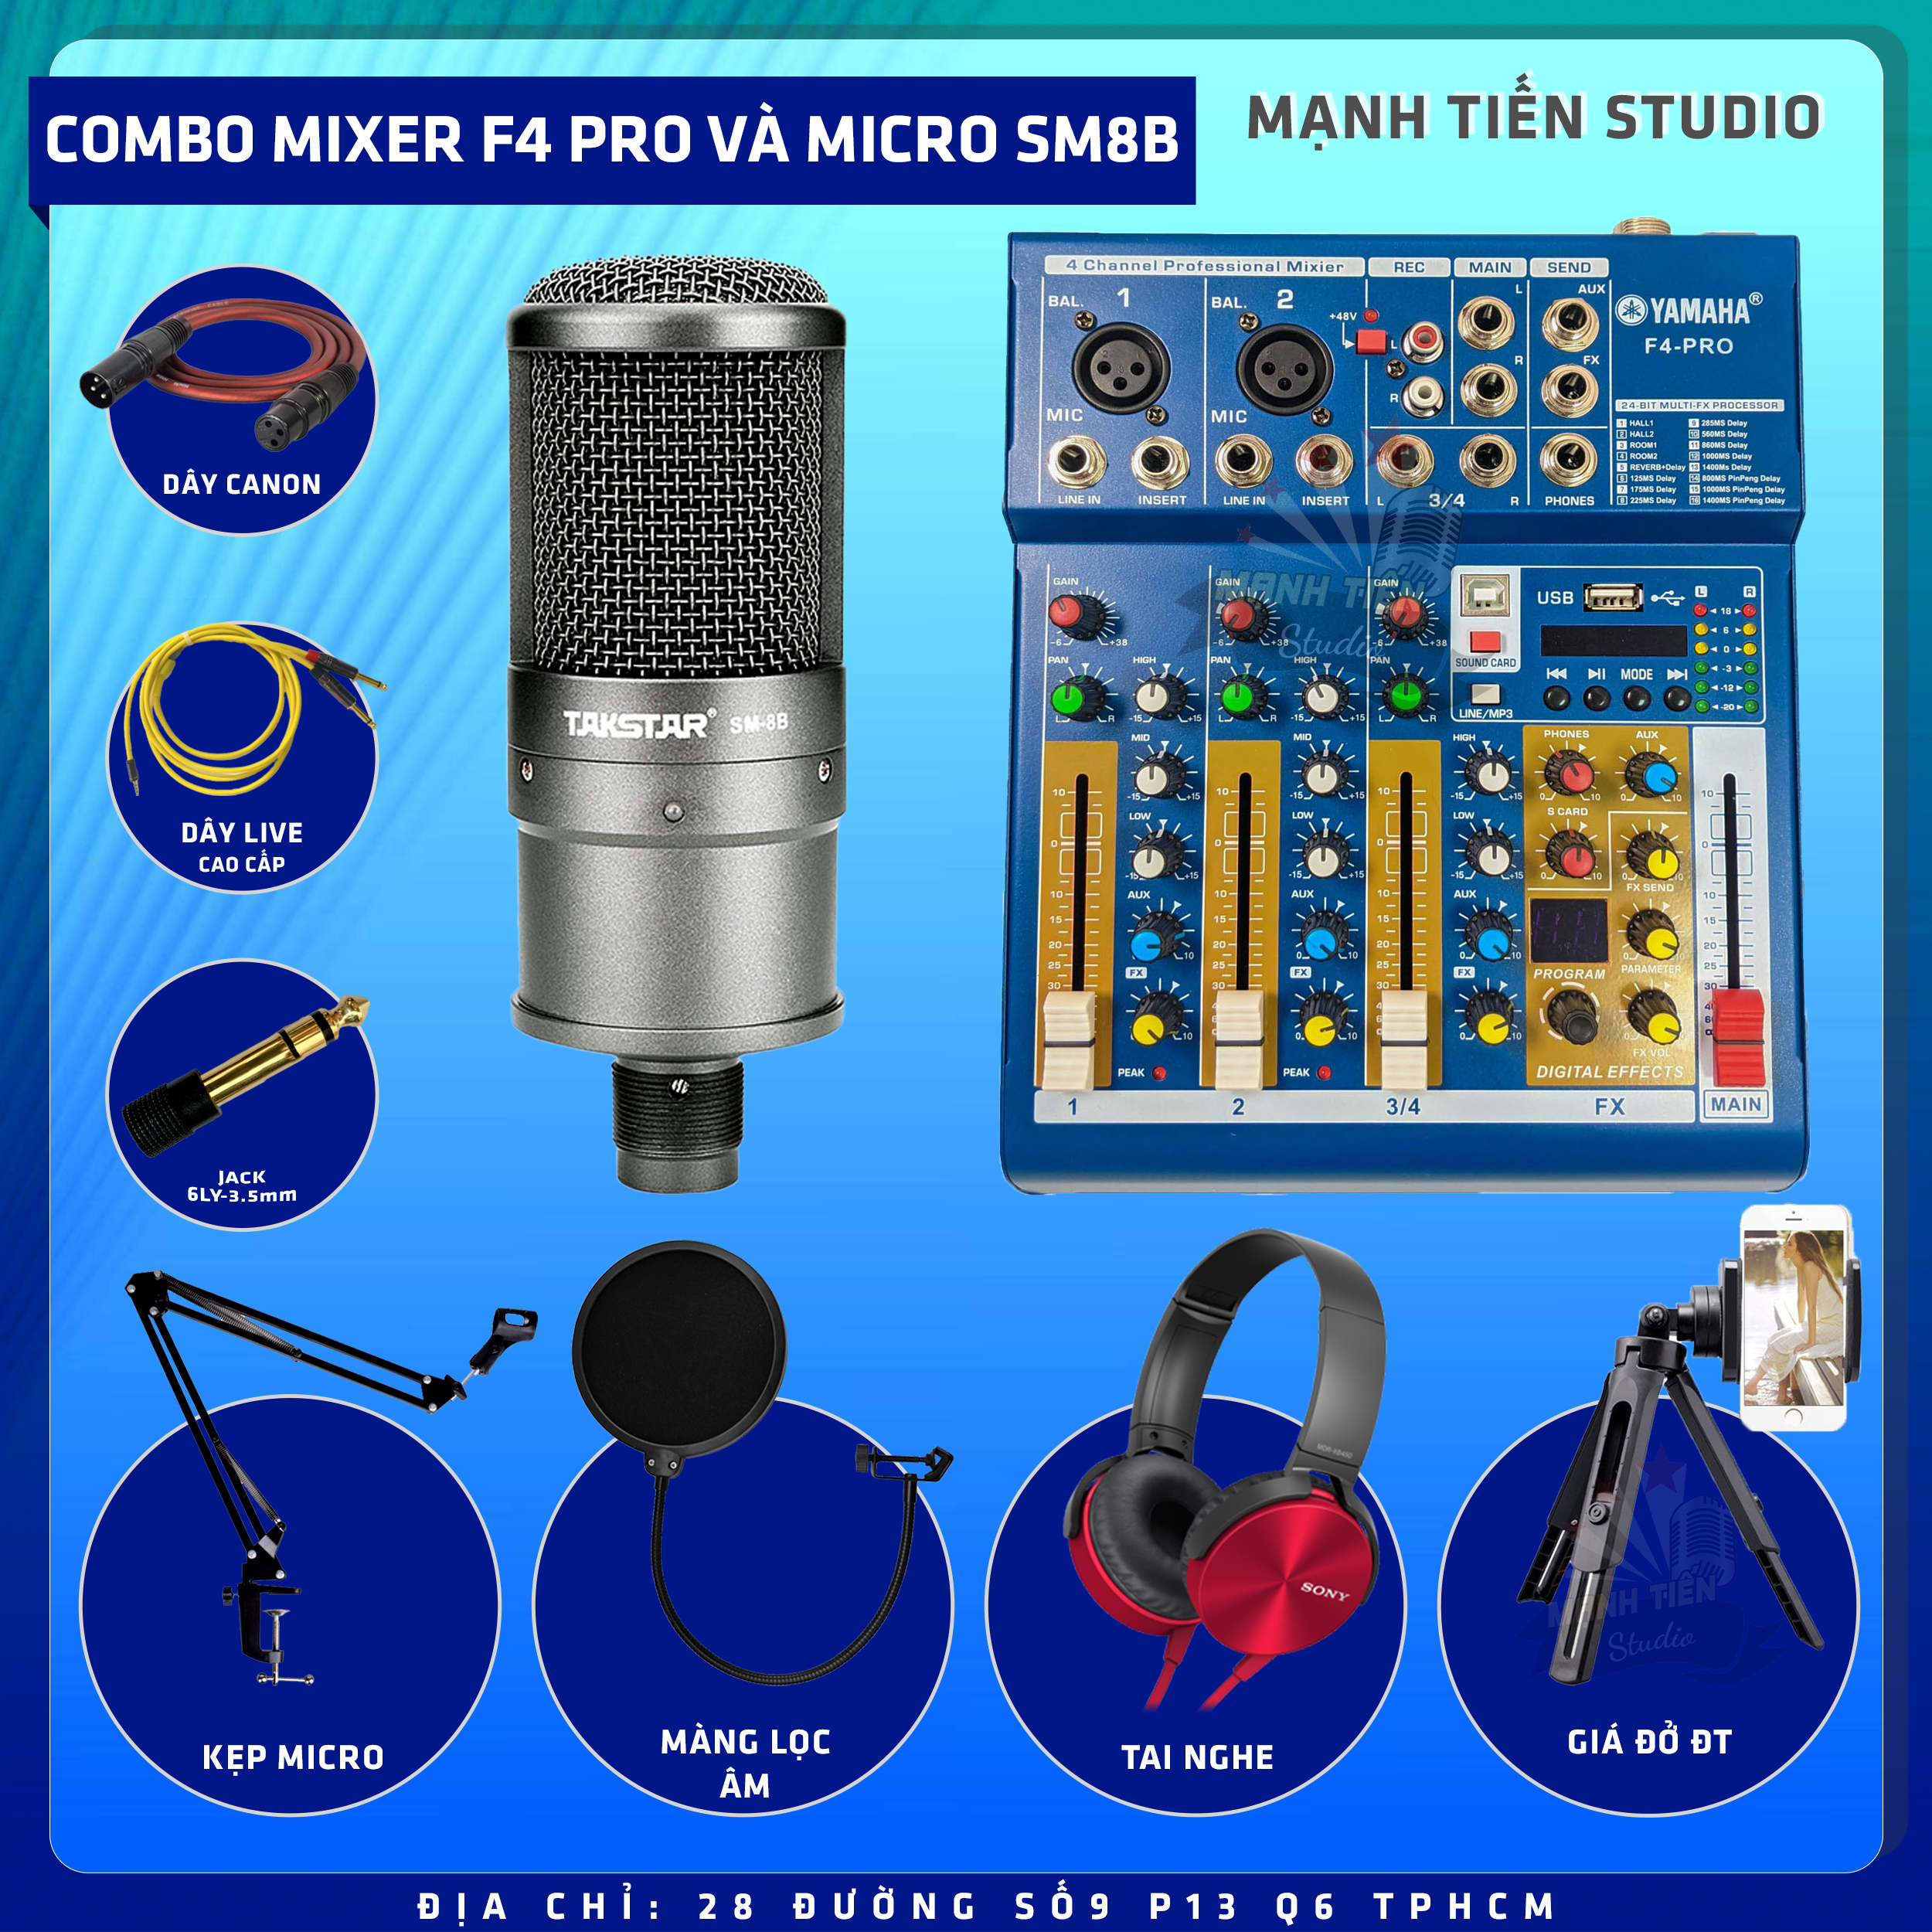 Combo thu âm, livestream Micro TakStar SM8B, Mixer Yamaha F4 Pro - Kèm full phụ kiện kẹp micro, màng lọc, tai nghe, dây canon, dây livestream, giá đỡ ĐT - Hỗ trợ thu âm, karaoke online chuyên nghiệp - Hàng nhập khẩu